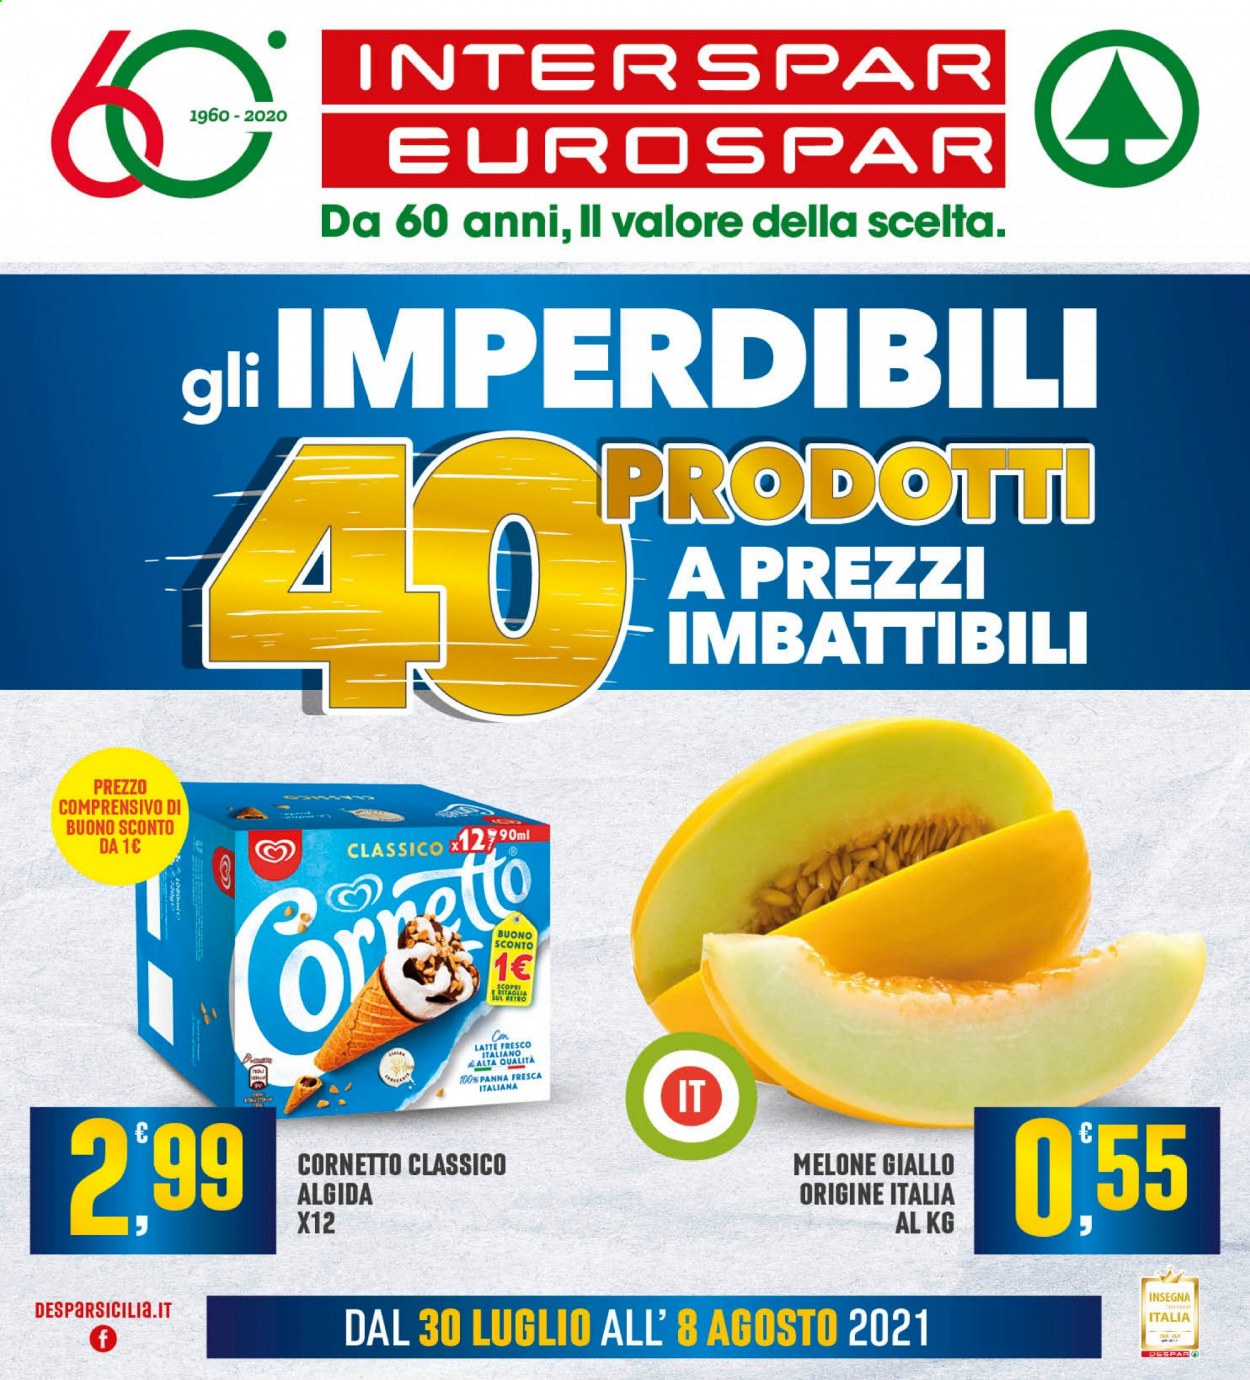 thumbnail - Volantino Interspar - 30/7/2021 - 8/8/2021 - Prodotti in offerta - Cornetto, melone, melone giallo, latte, gelato, Algida. Pagina 1.